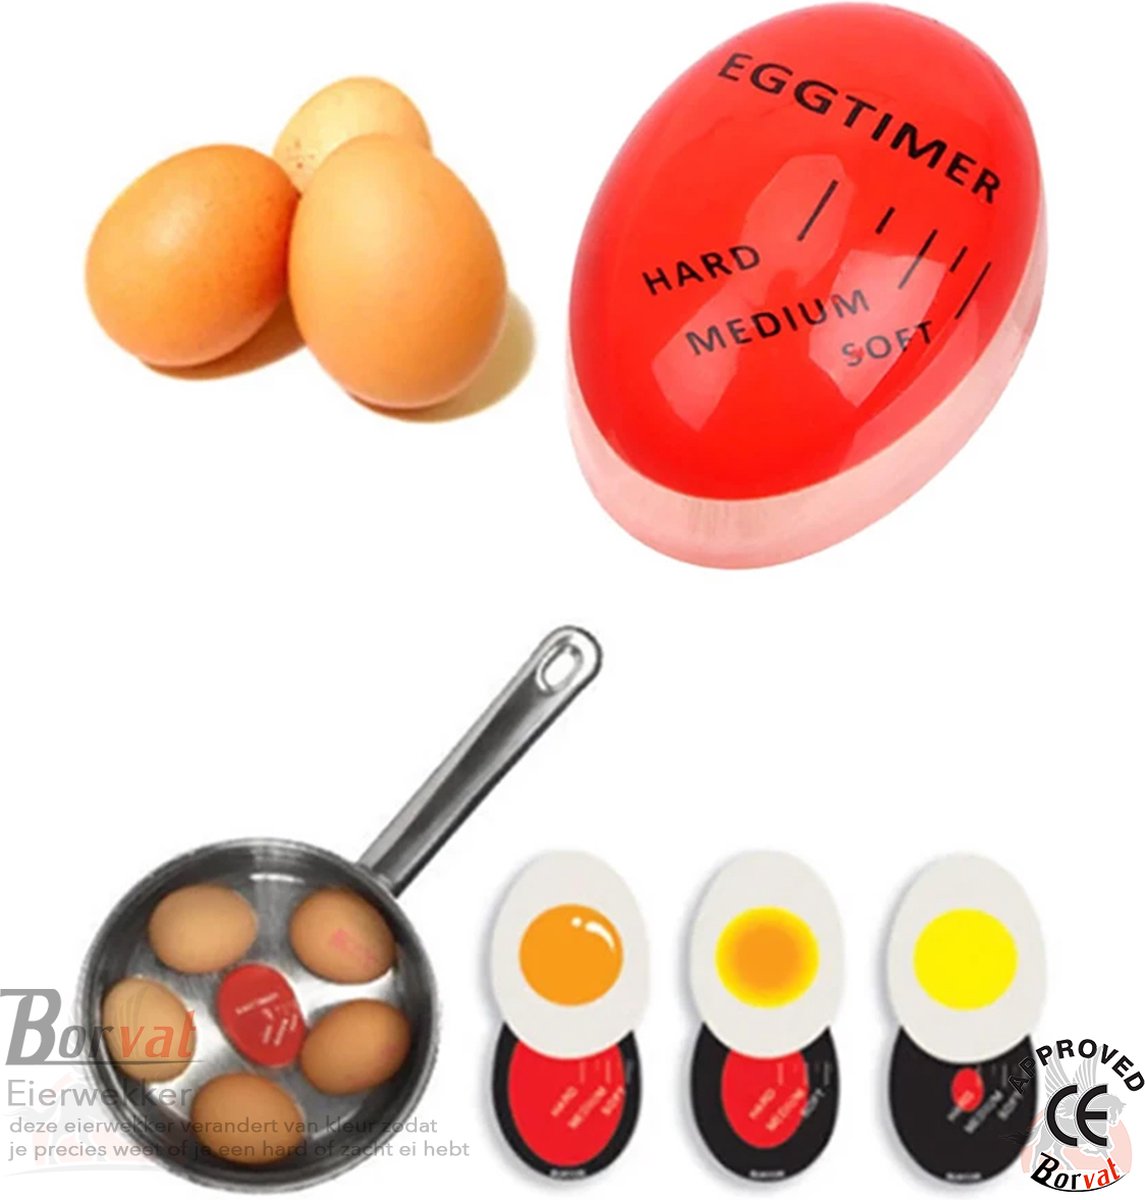 Borvat® - Eierwekker - Kookwekker - Egg timer - Eierkoker - Ei timer - Ei Timer - Ei wekker